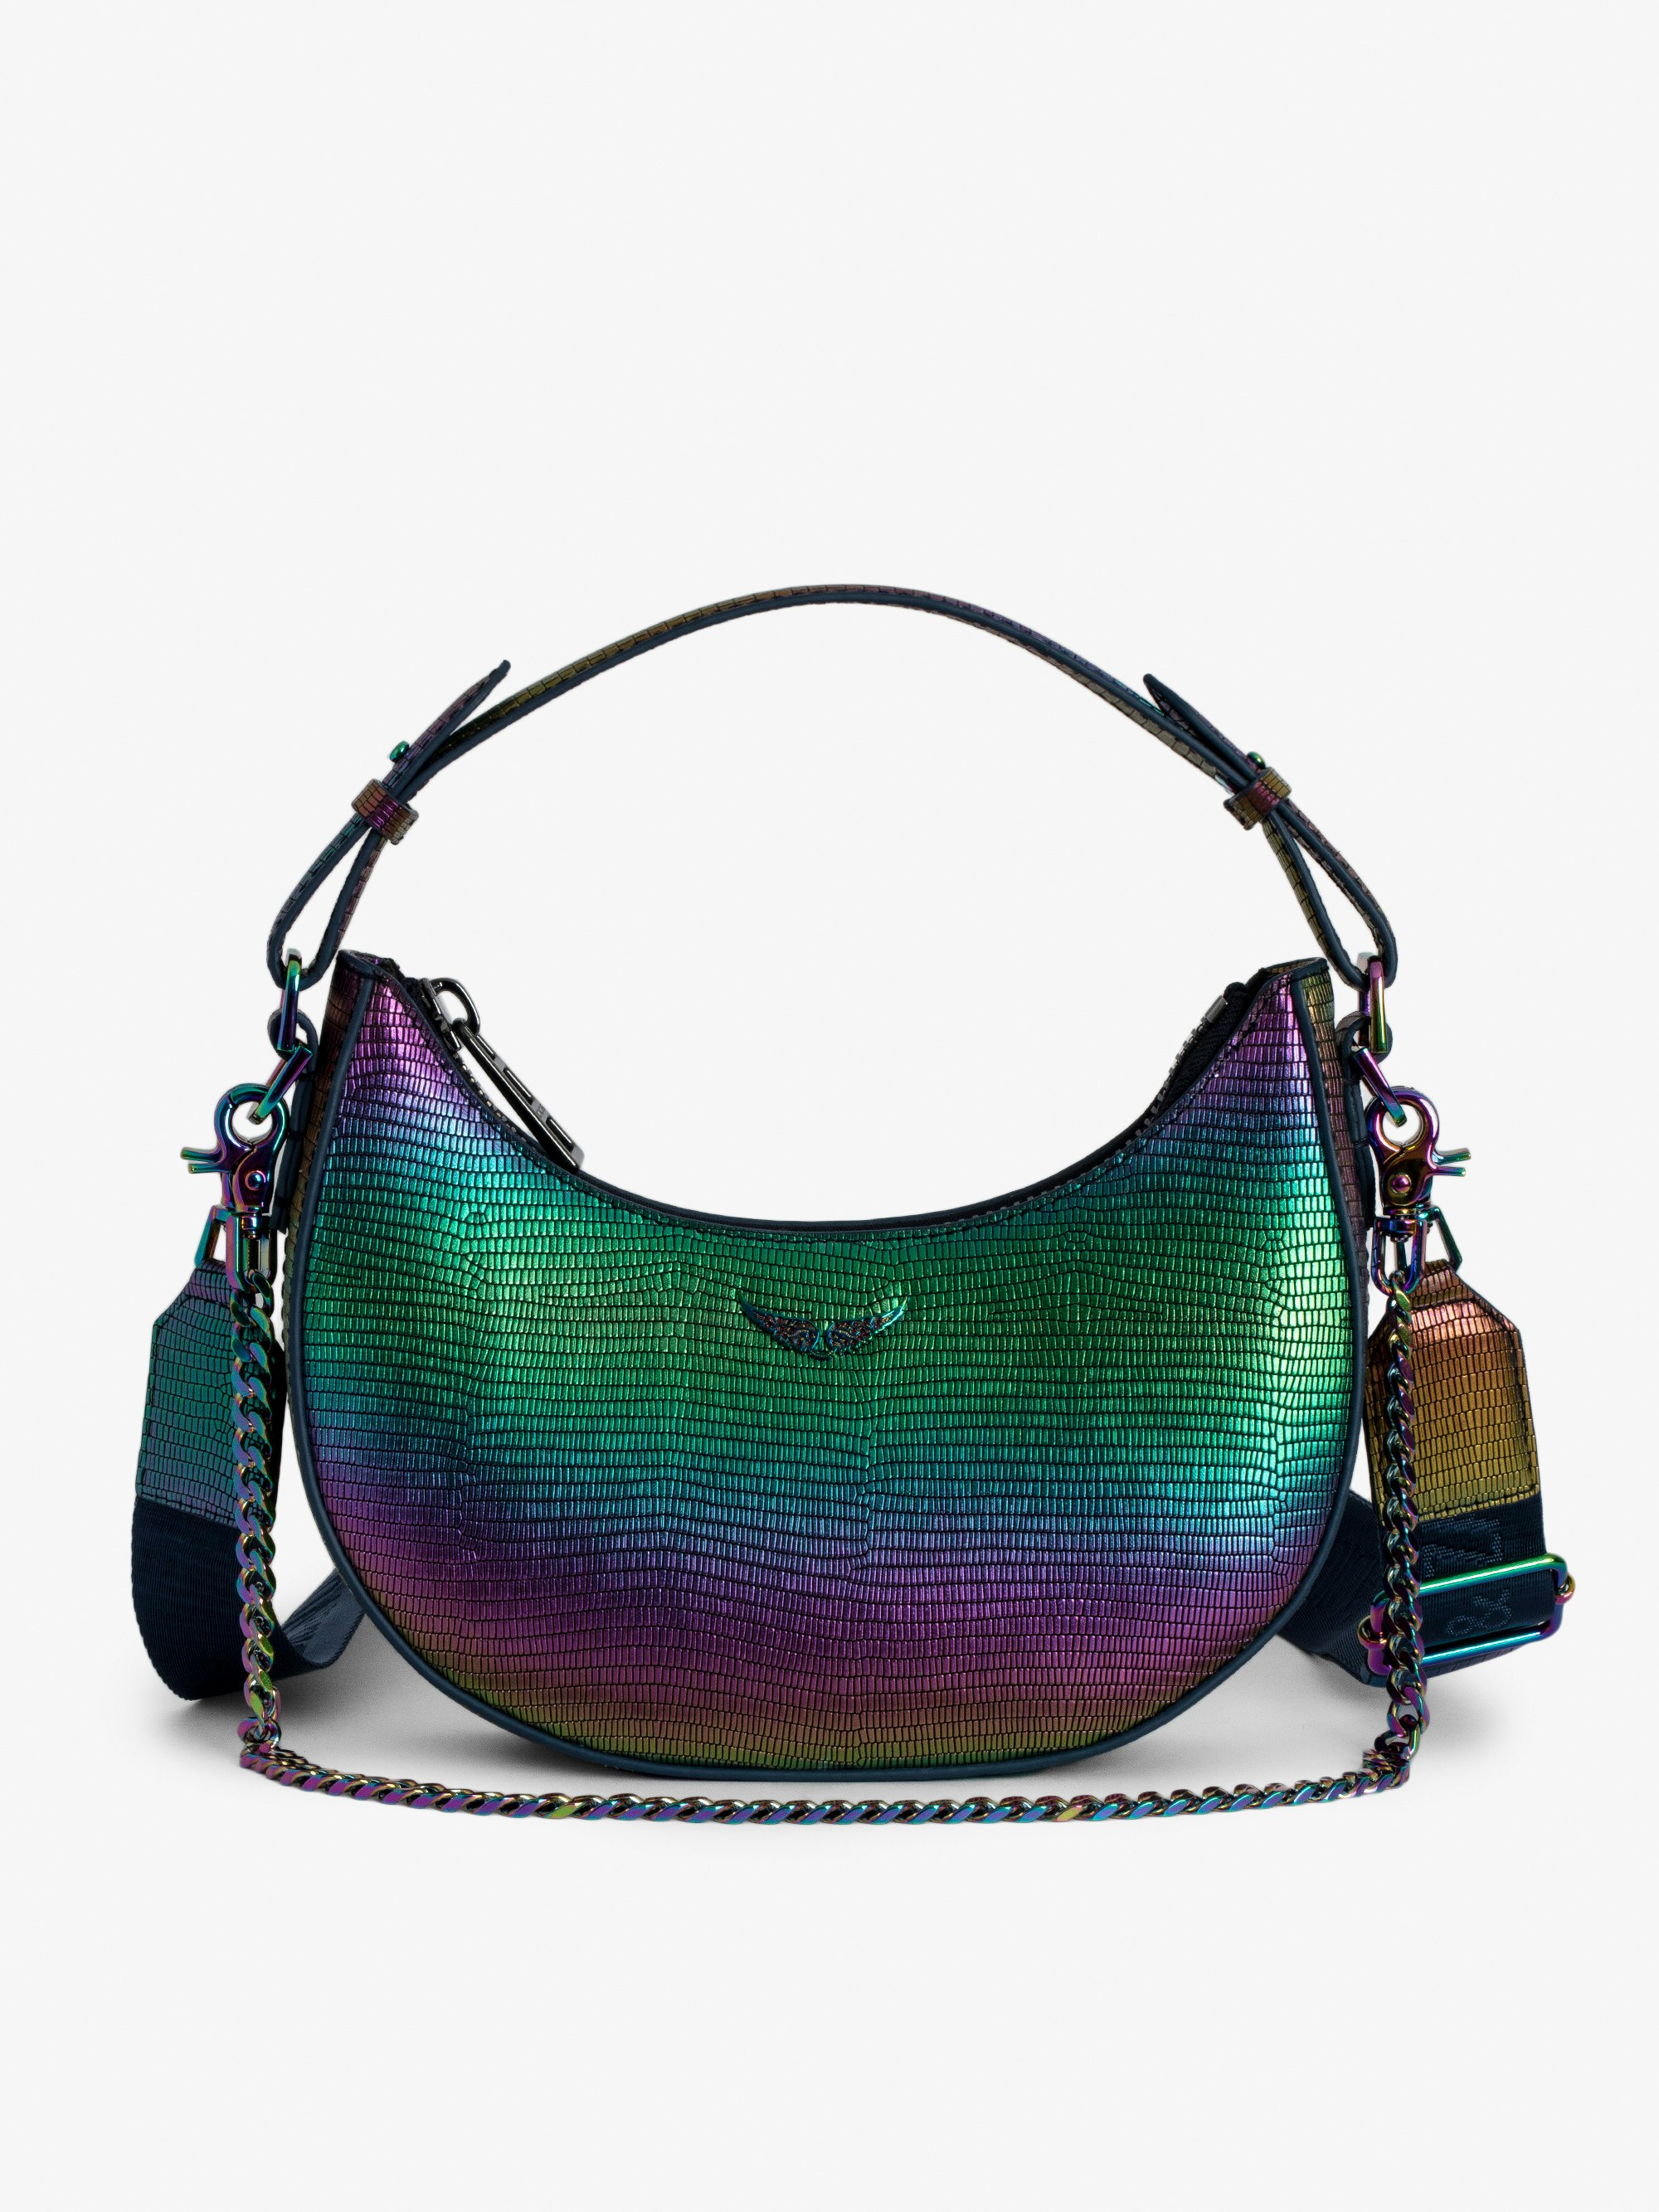 Tasche Moonrock Metallic Geprägt - Halbmondförmige, regenbogenfarbene Handtasche aus Metallic-Leder mit Leguan-Prägung mit Henkel, Schulterriemen, Kette und Flügel-Charm.